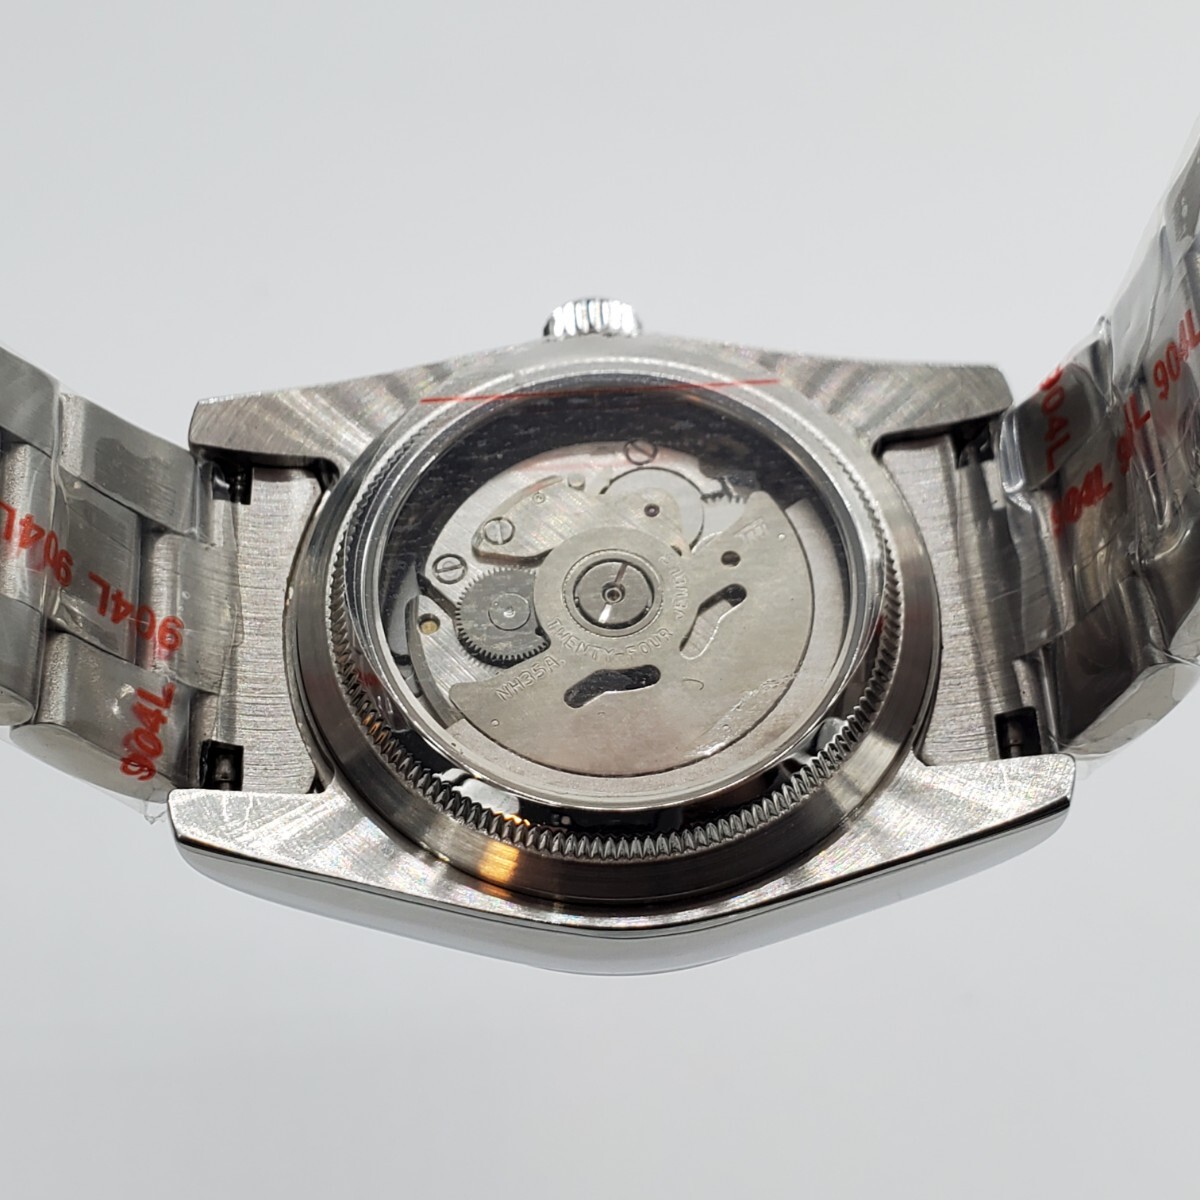 新品 自動巻 LARIMOKER ノーロゴ ピンク文字盤 36mm セイコー NH35 メンズ腕時計 機械式 サファイア風防 シースルーバック仕様_画像6